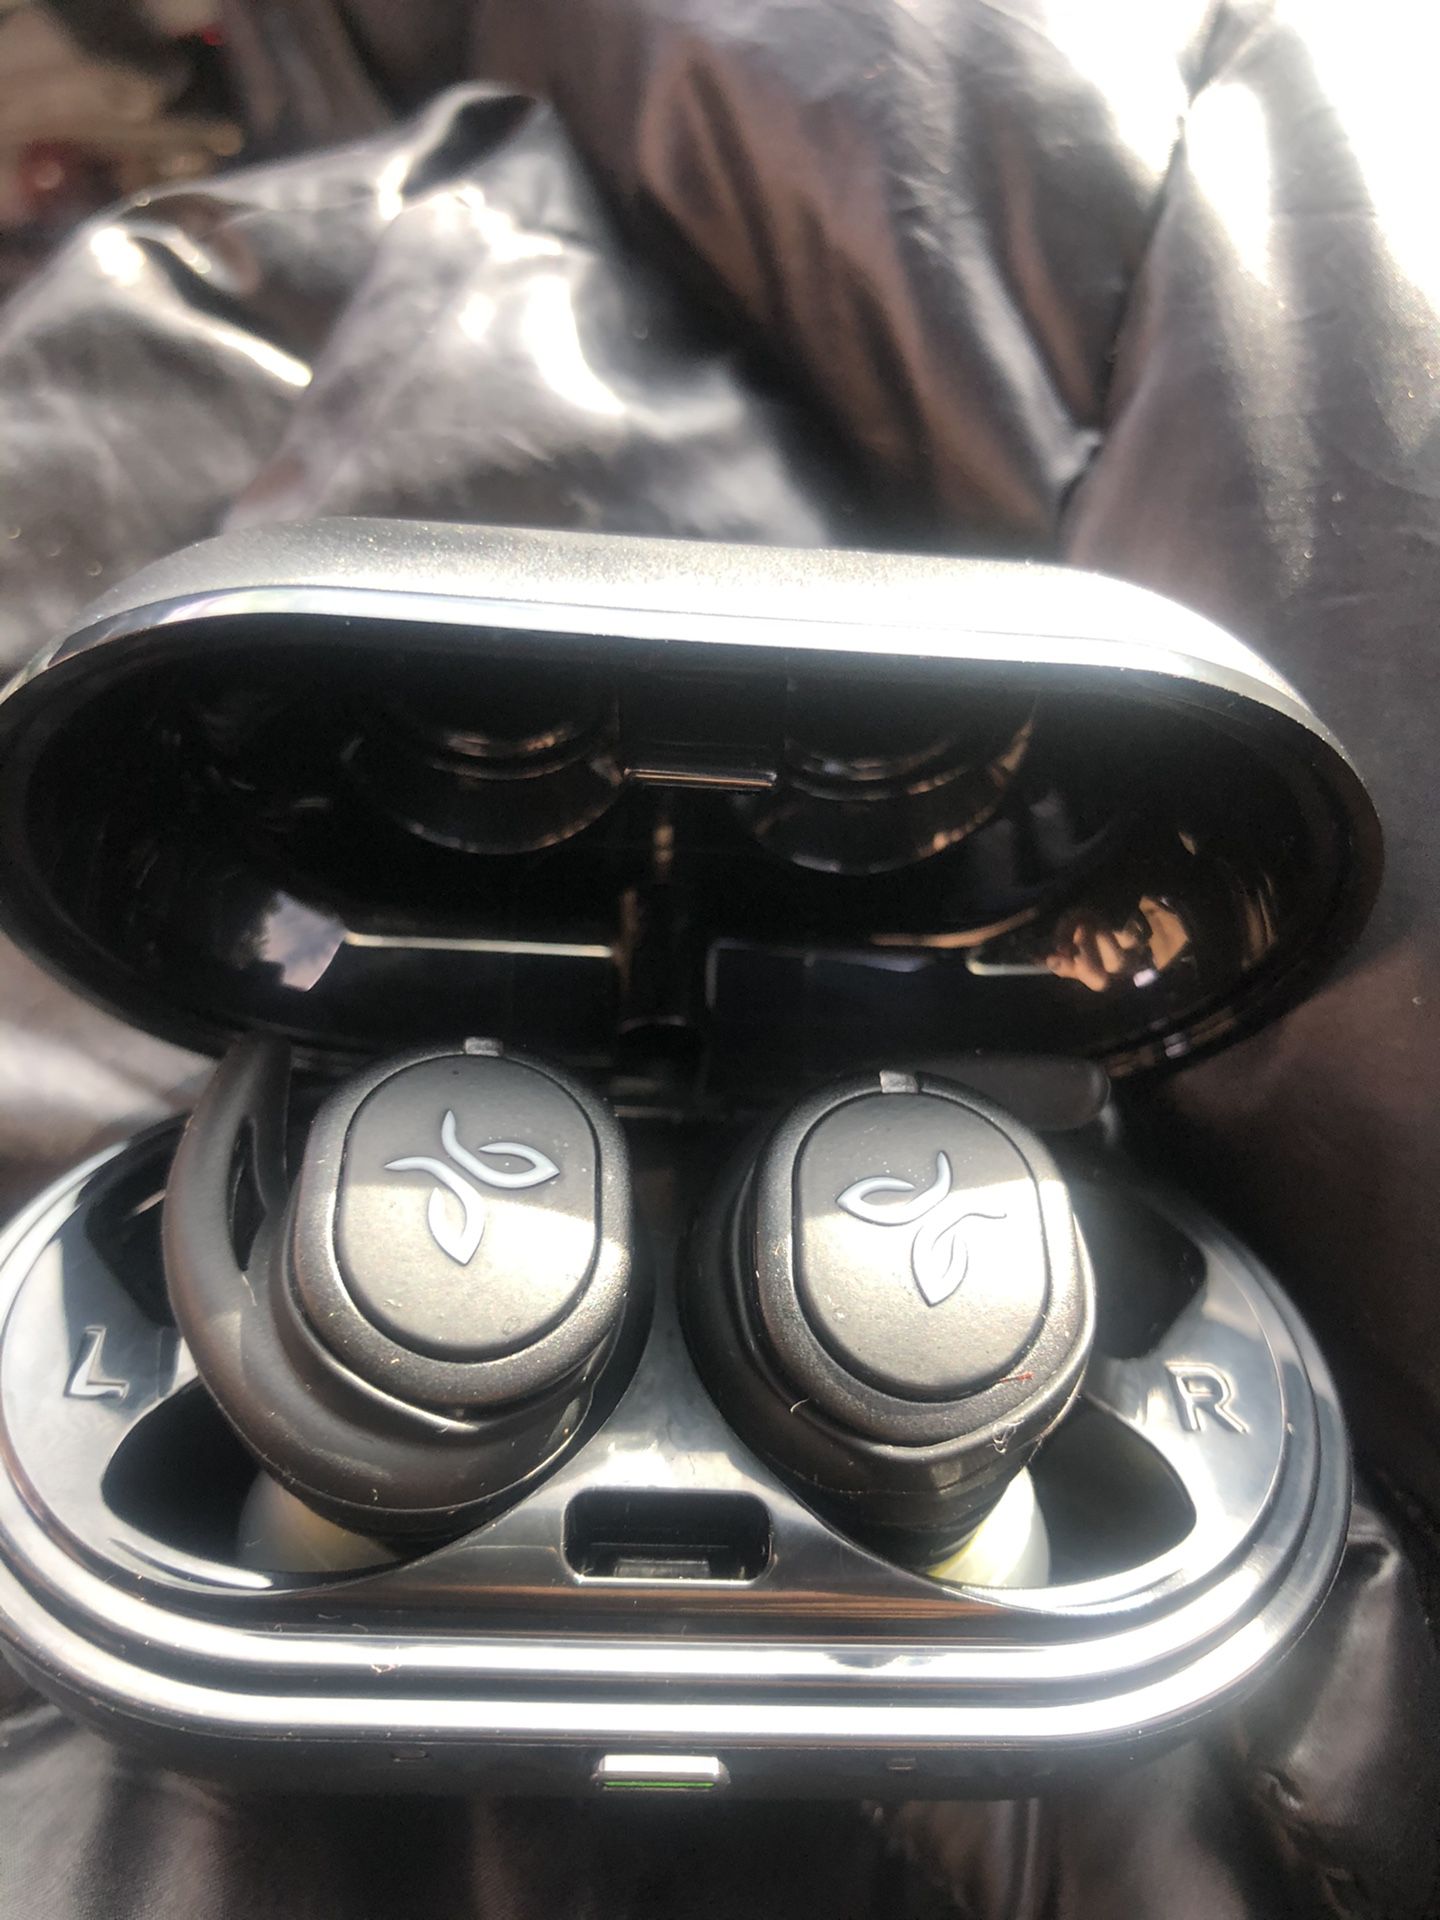 JayBird Run XT wireless headphones